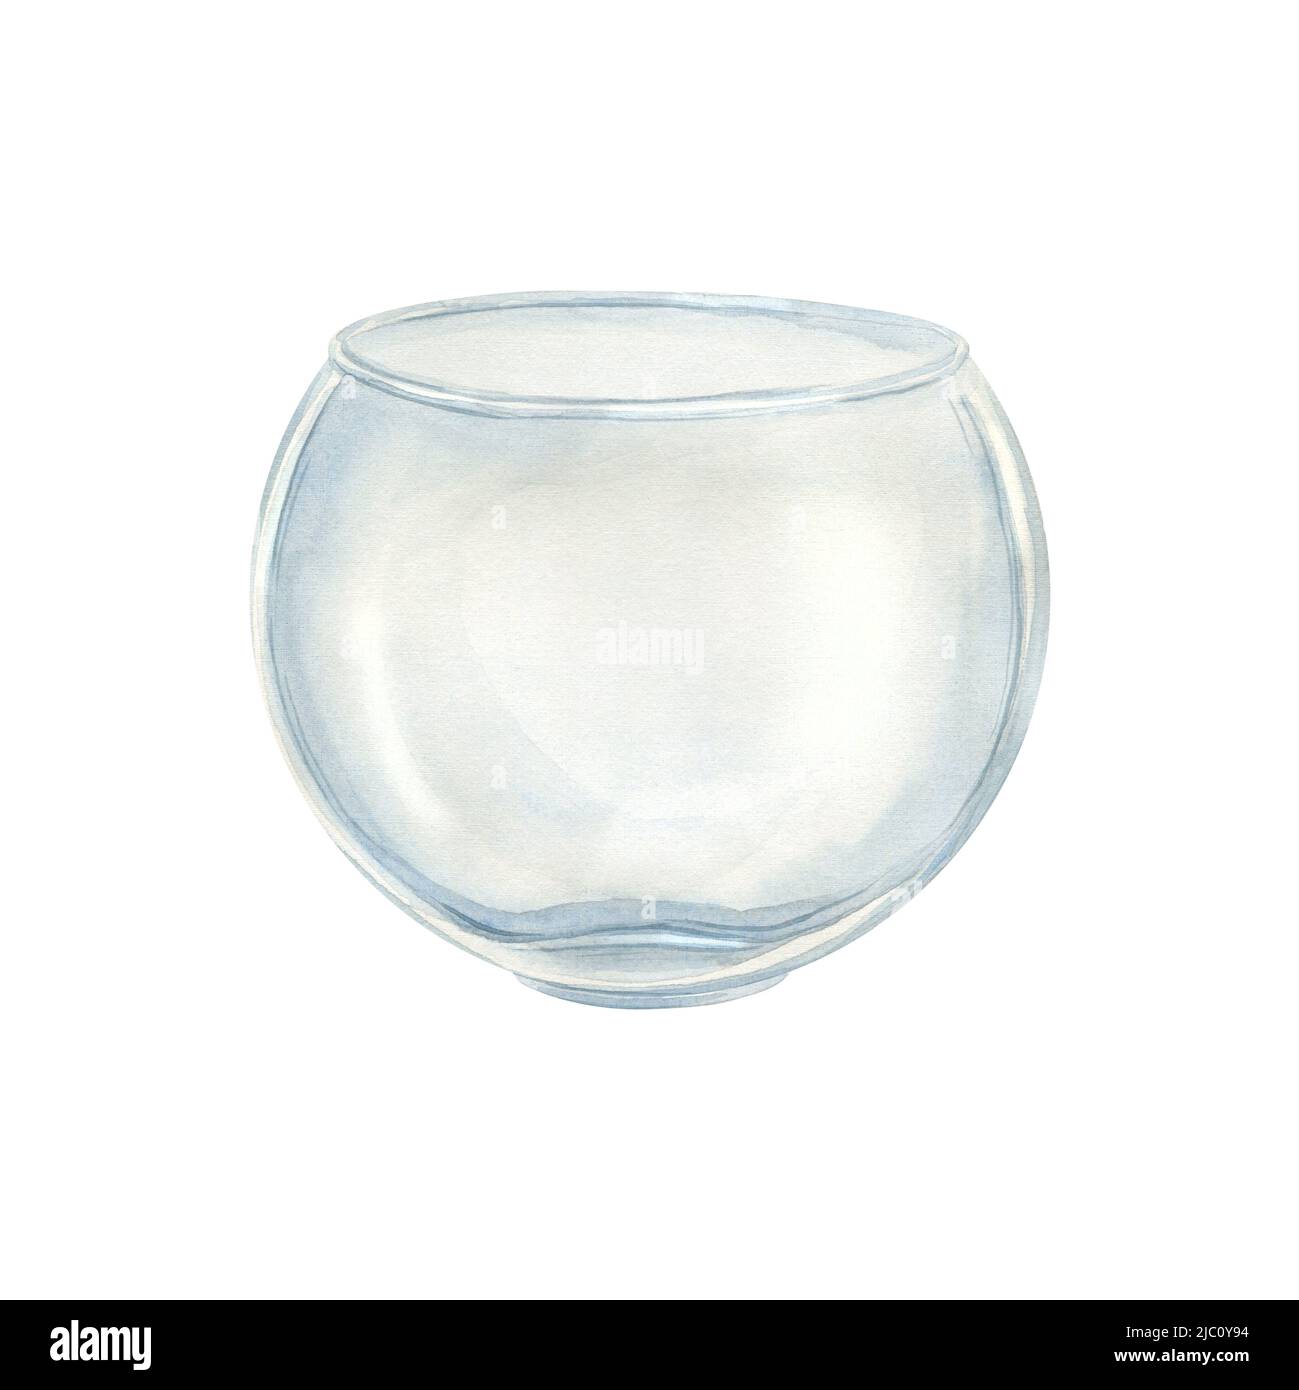 Aquarell-Illustration einer runden Vase aus Glas. Transparentes Glas für Blumensträuße der Kompositionen, Wohnkultur. Für Design, Dekoration, Inneneinrichtung. Stockfoto